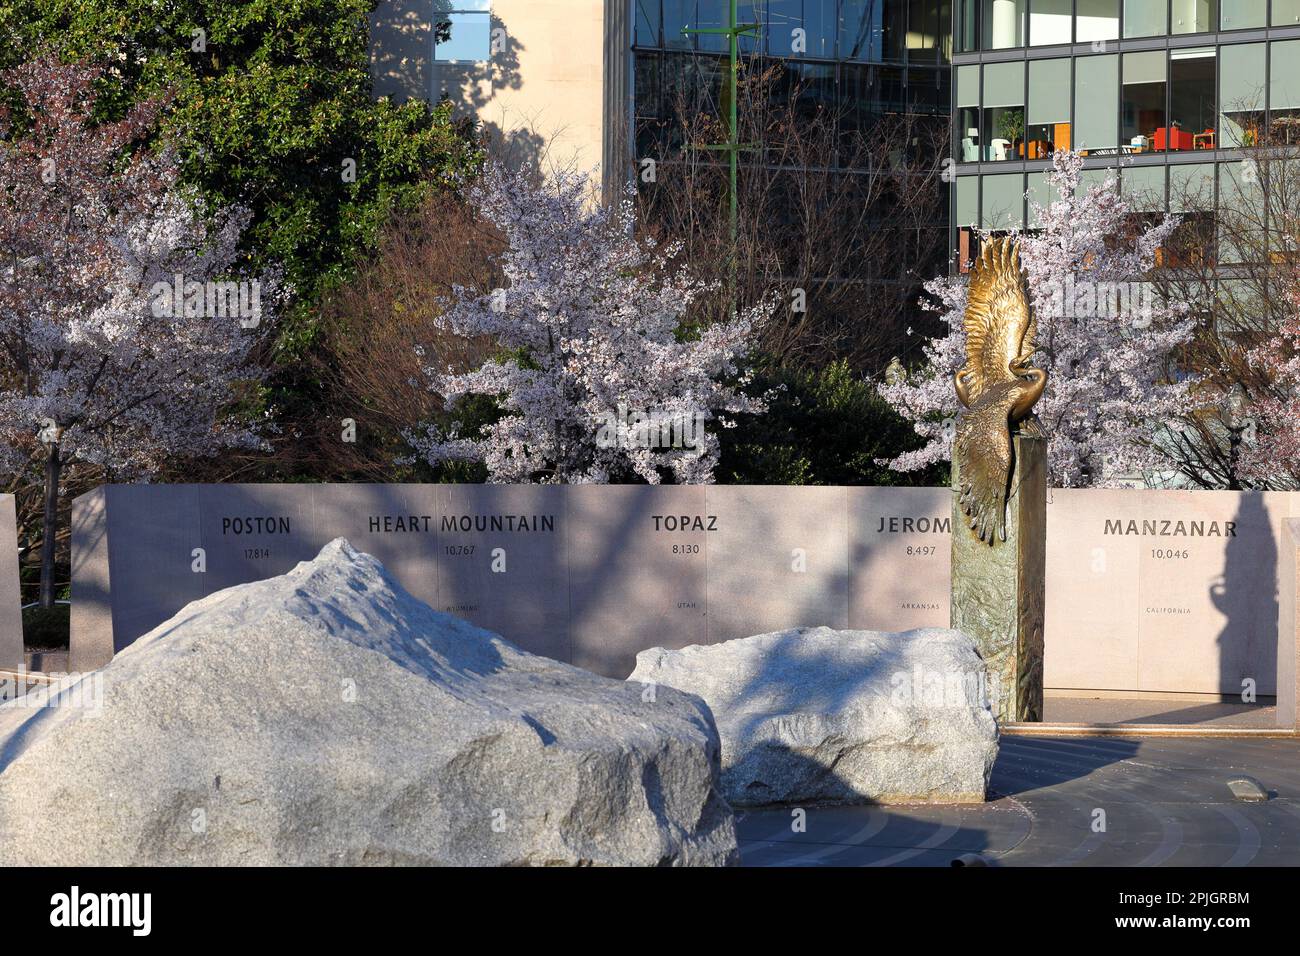 Memoriale giapponese americano al patriottismo durante la seconda guerra mondiale, Washington, DC. Il memoriale riflette l'eredità dei campi di concentramento (vedi info Foto Stock